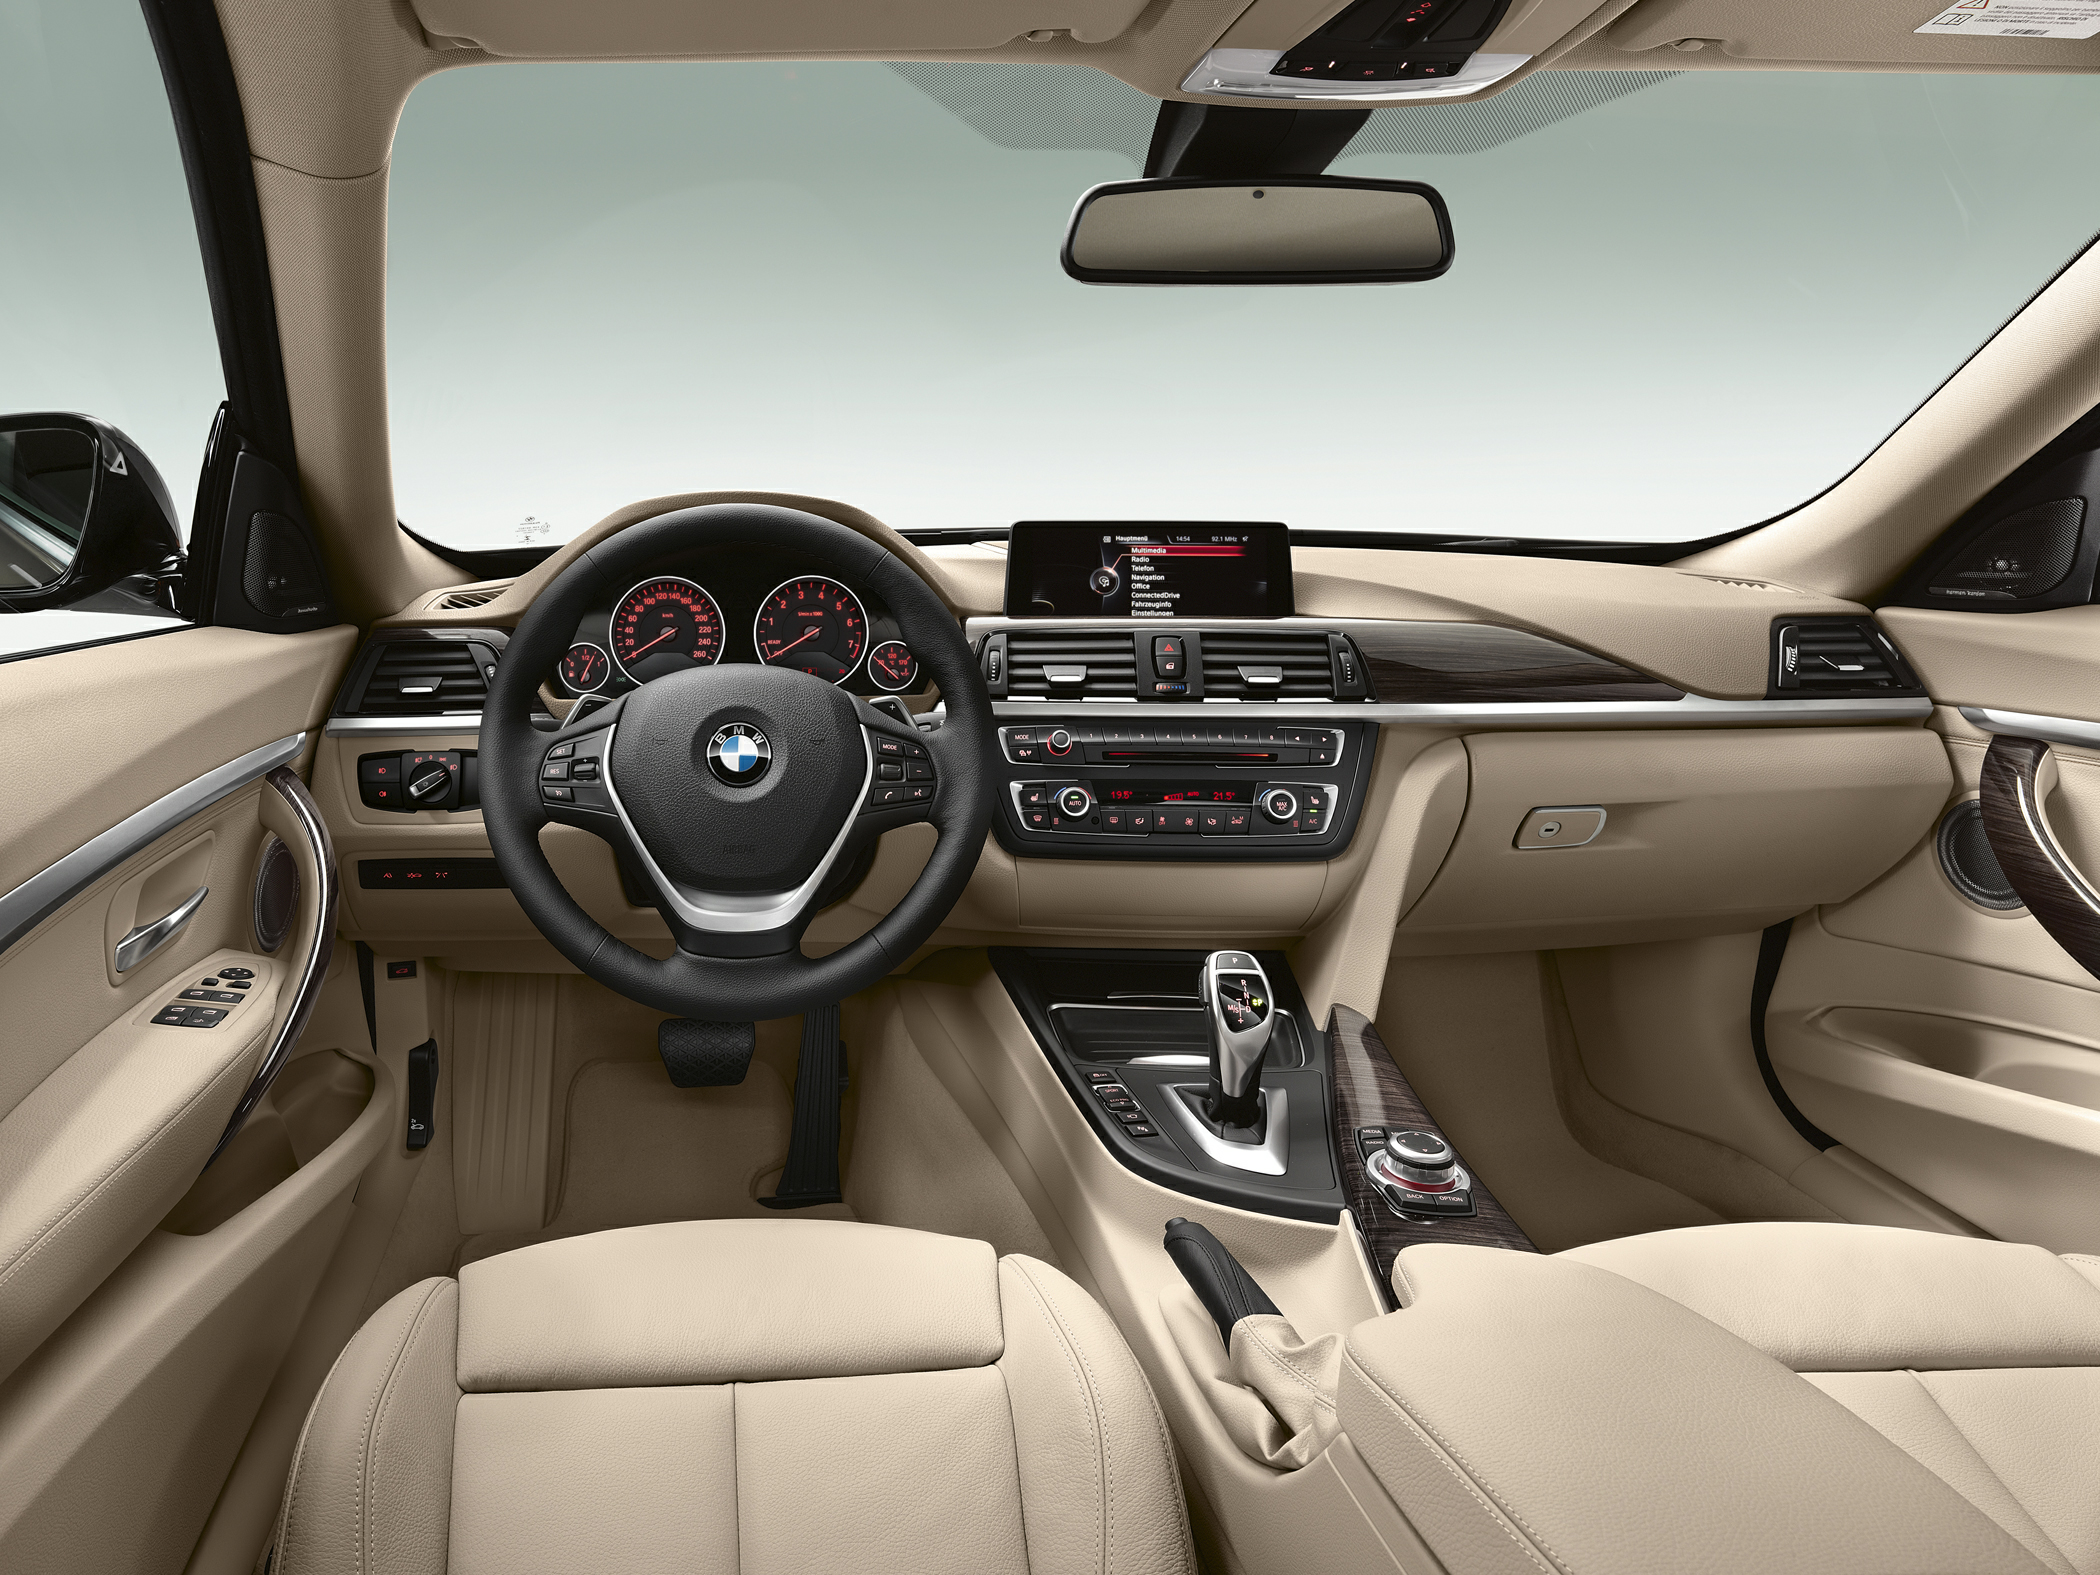 2015 BMW 335 Gran Turismo